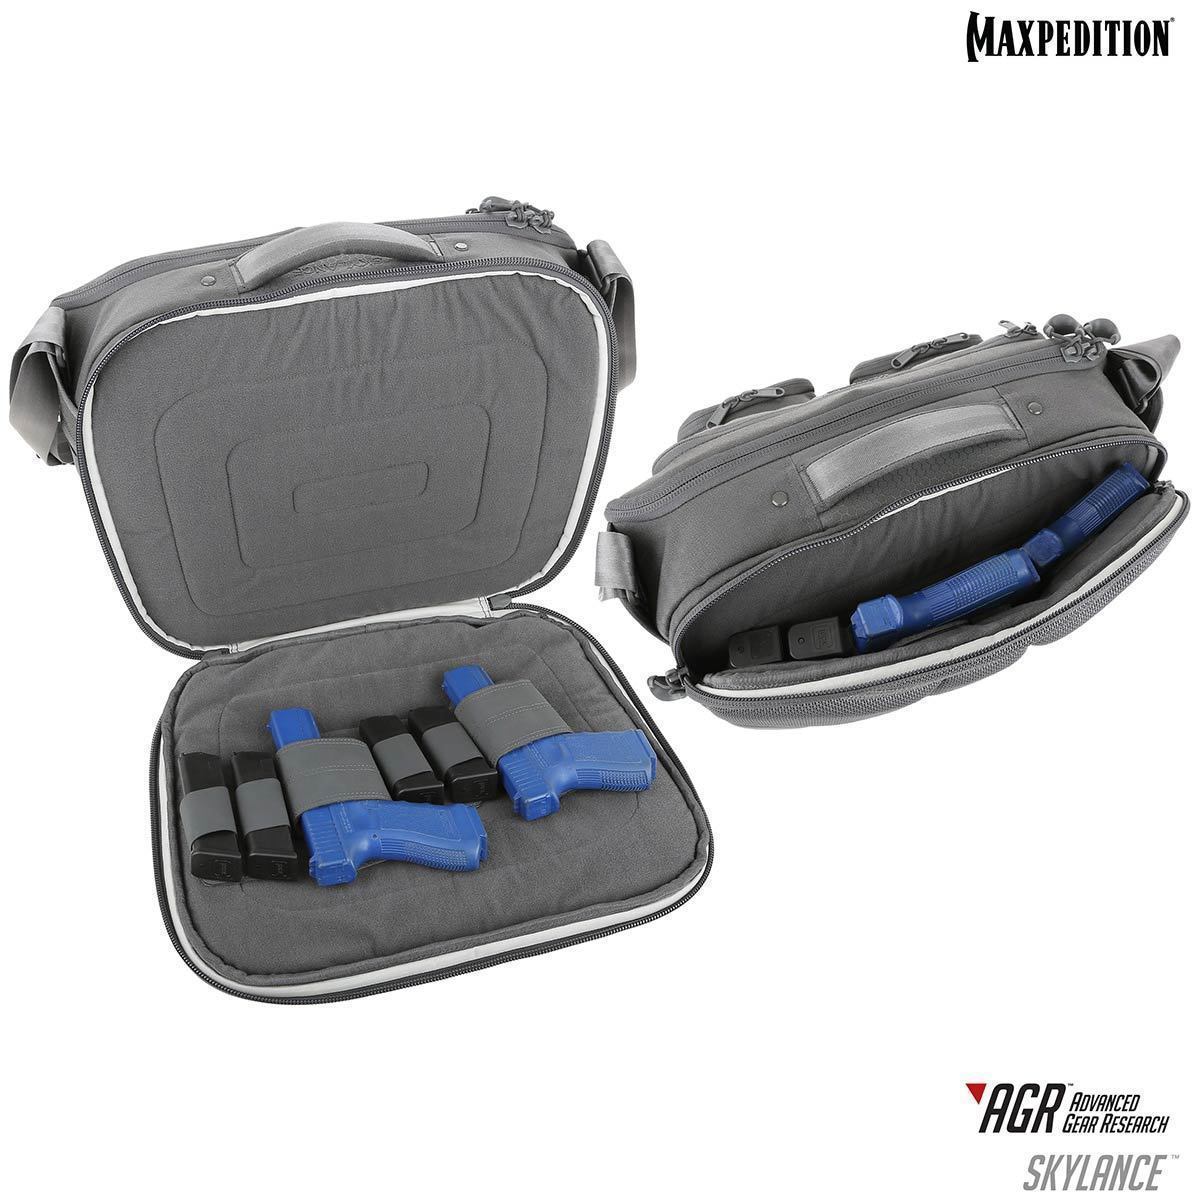 Maxpedition Skylance Tech Gear Bag 28L Tactical Distributors Ltd New Zealand